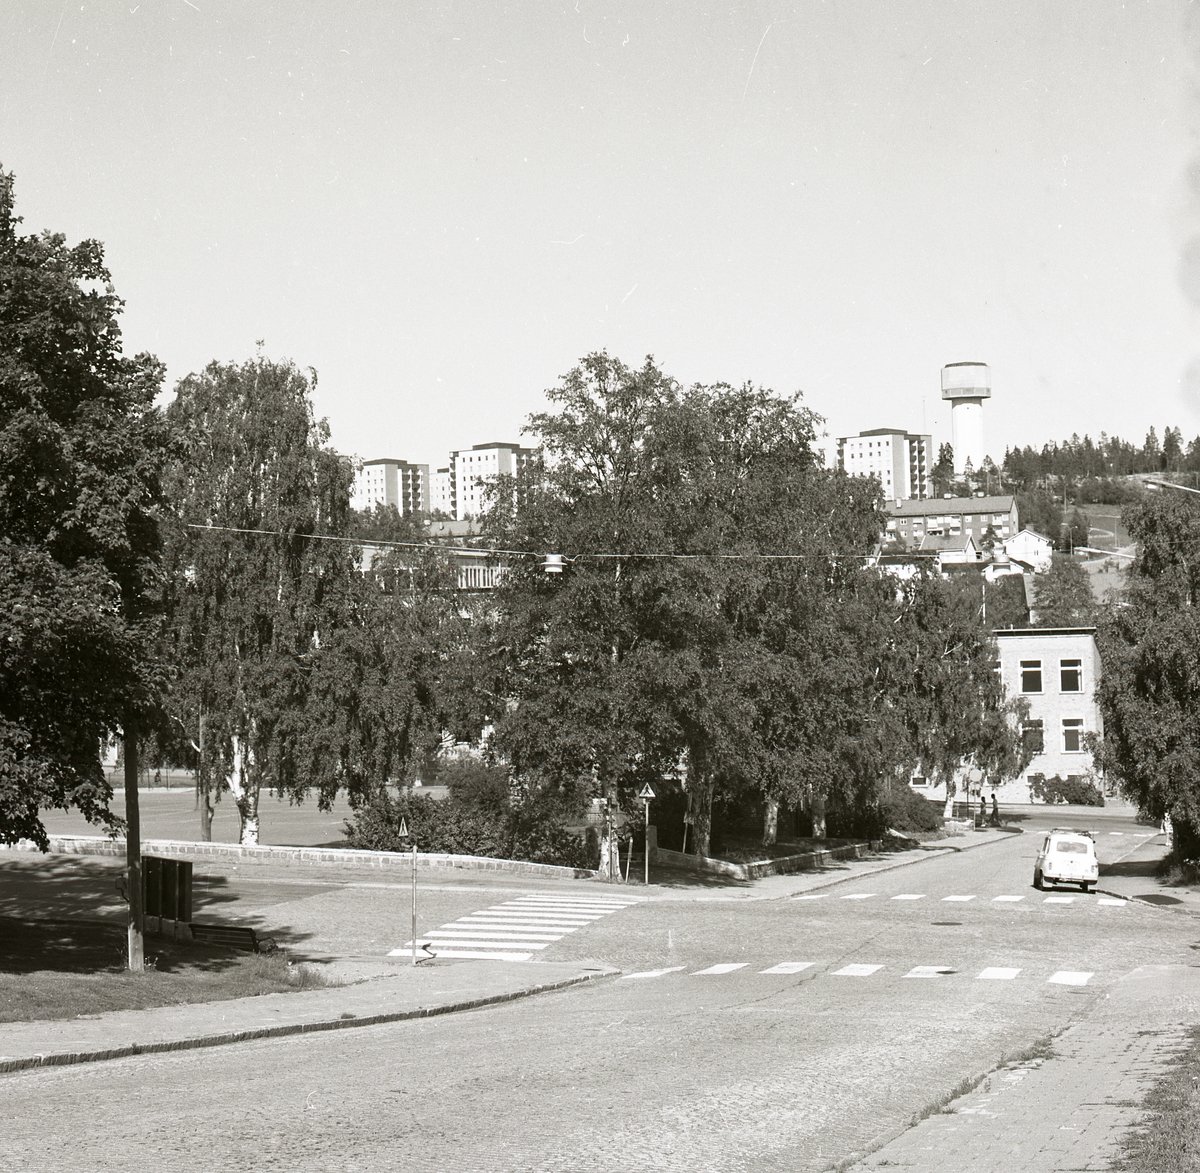 En del av Örnsköldsviks stadskärna, 19 juli 1974.